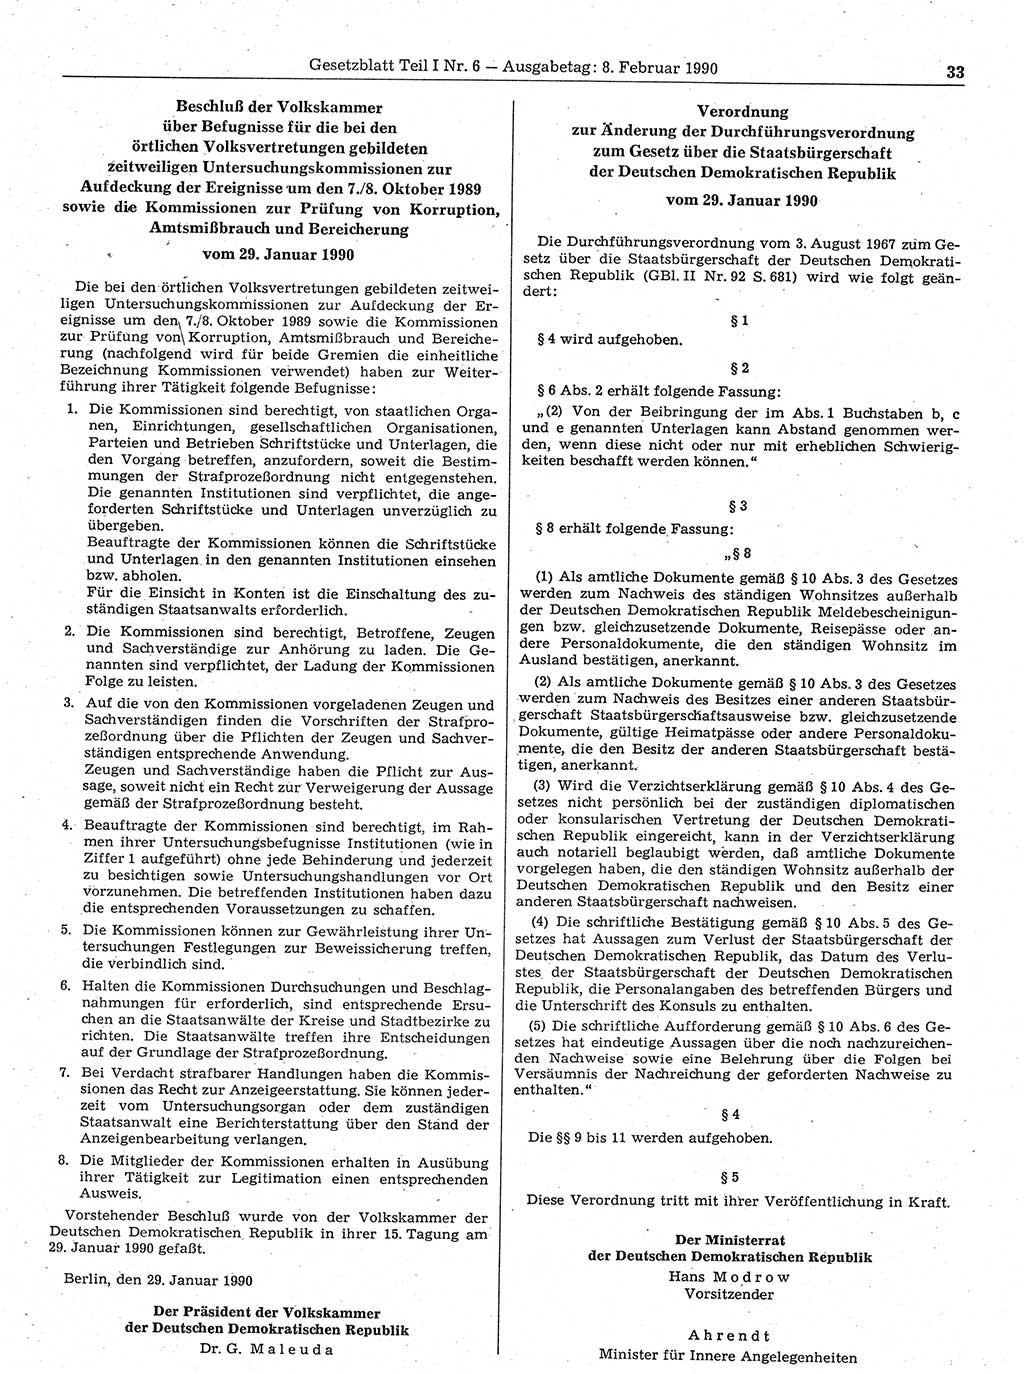 Gesetzblatt (GBl.) der Deutschen Demokratischen Republik (DDR) Teil Ⅰ 1990, Seite 33 (GBl. DDR Ⅰ 1990, S. 33)